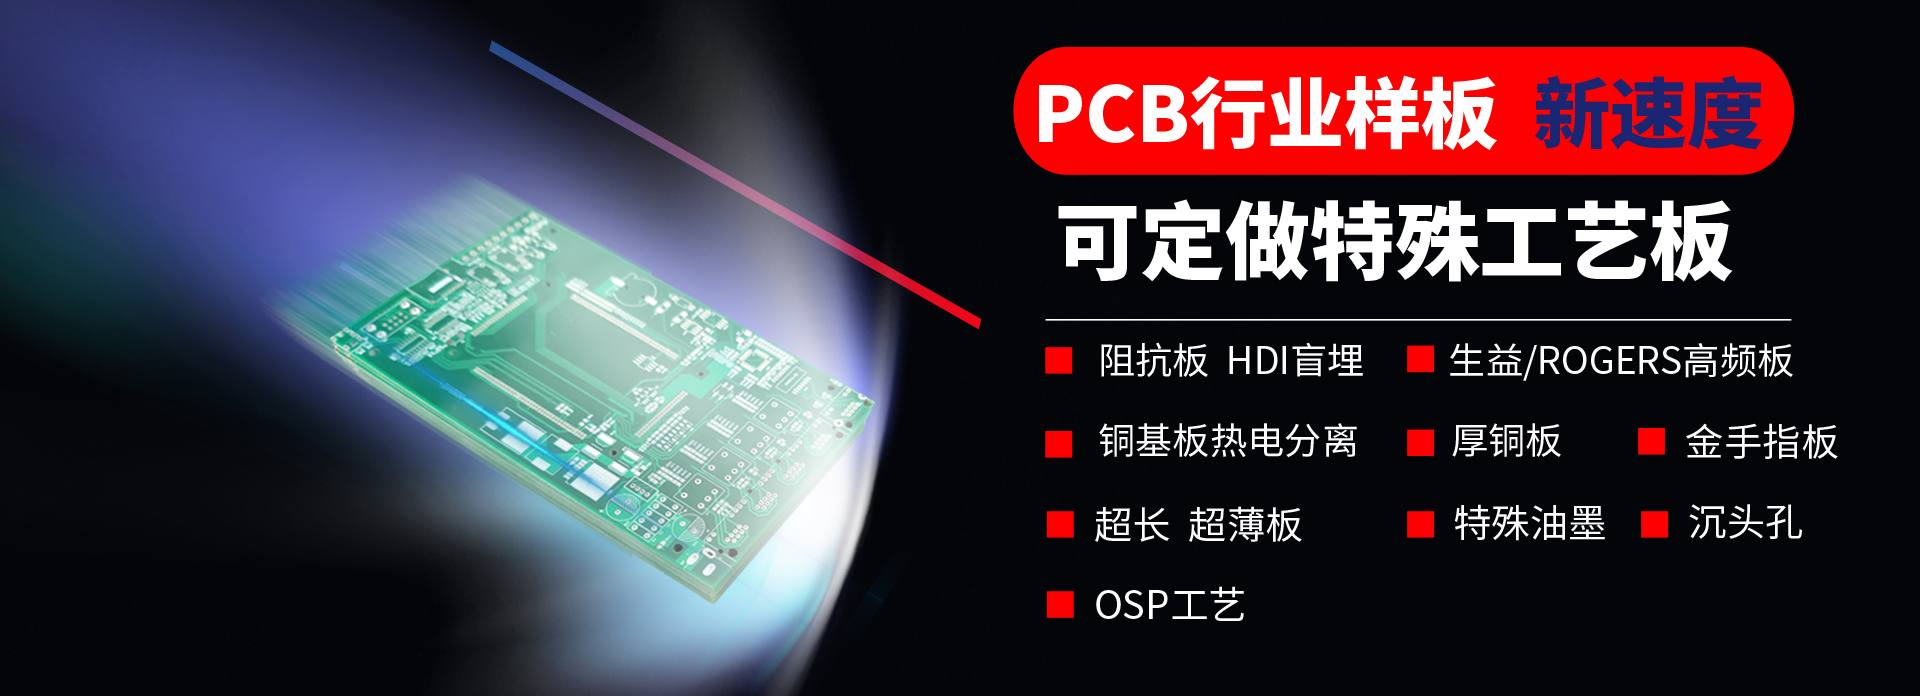 首頁幻燈大圖三-上海PCB抄板_SMT貼片_PCB加工_線路板焊接加工